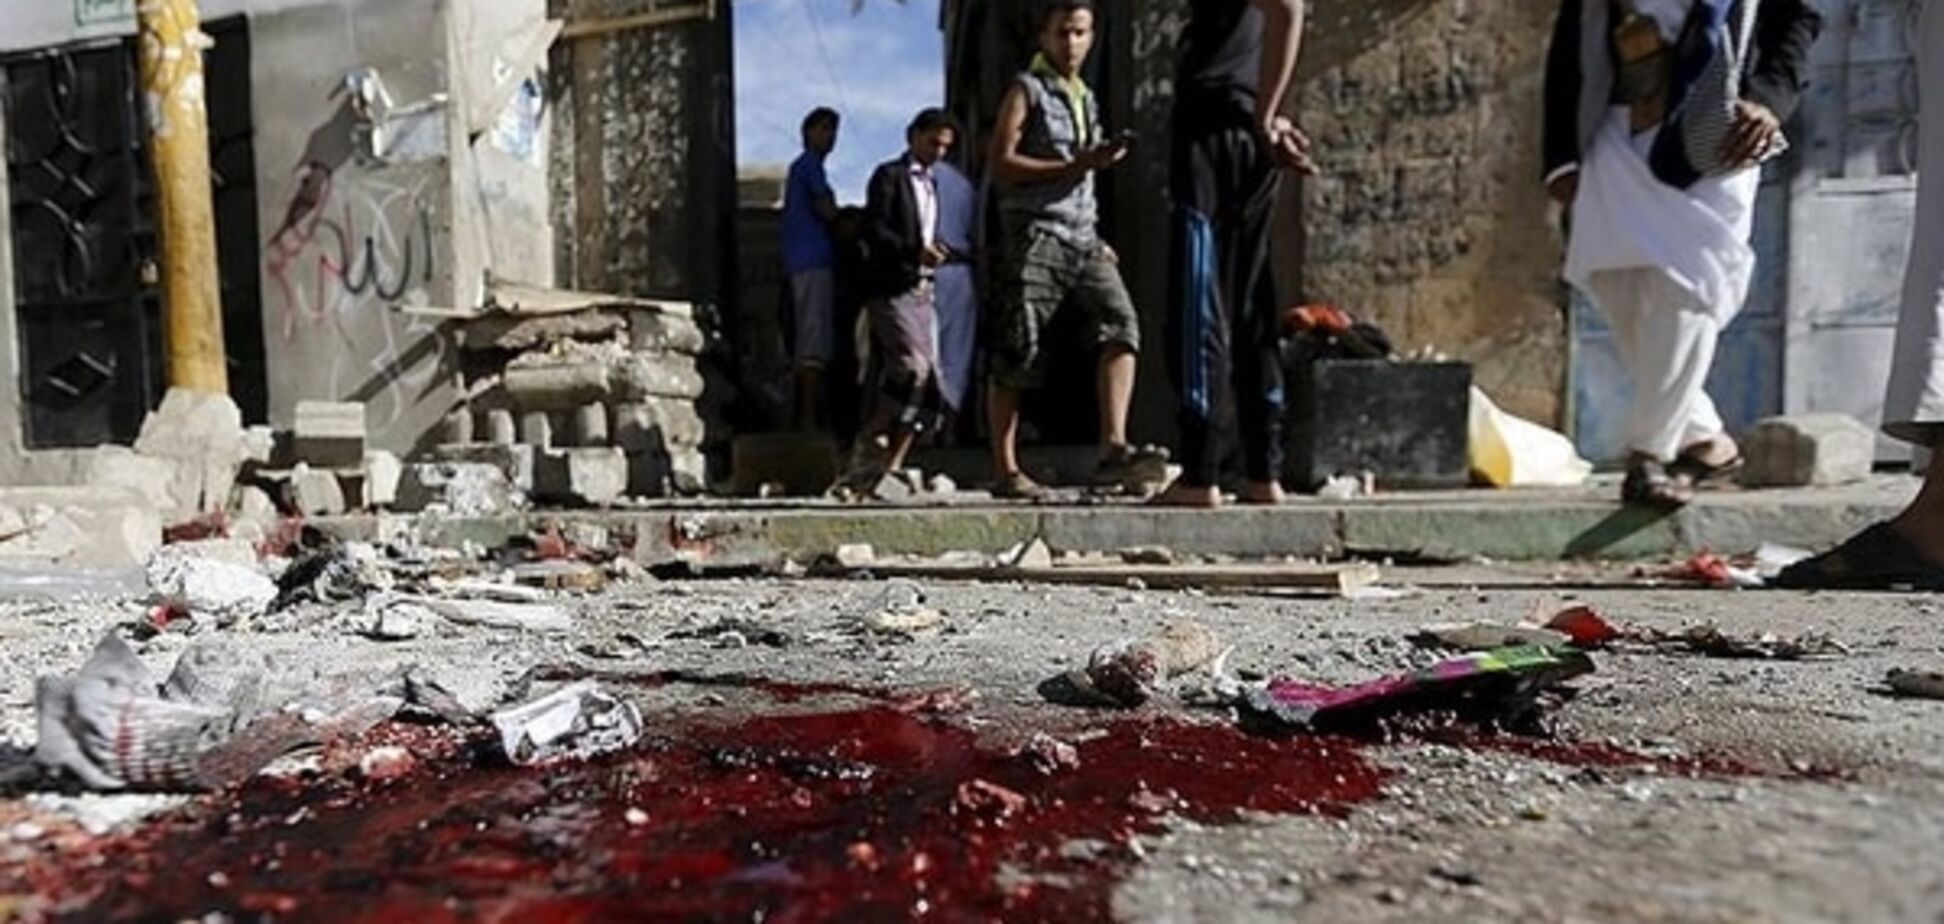 В мечети Йемена во время молитвы прогремел взрыв